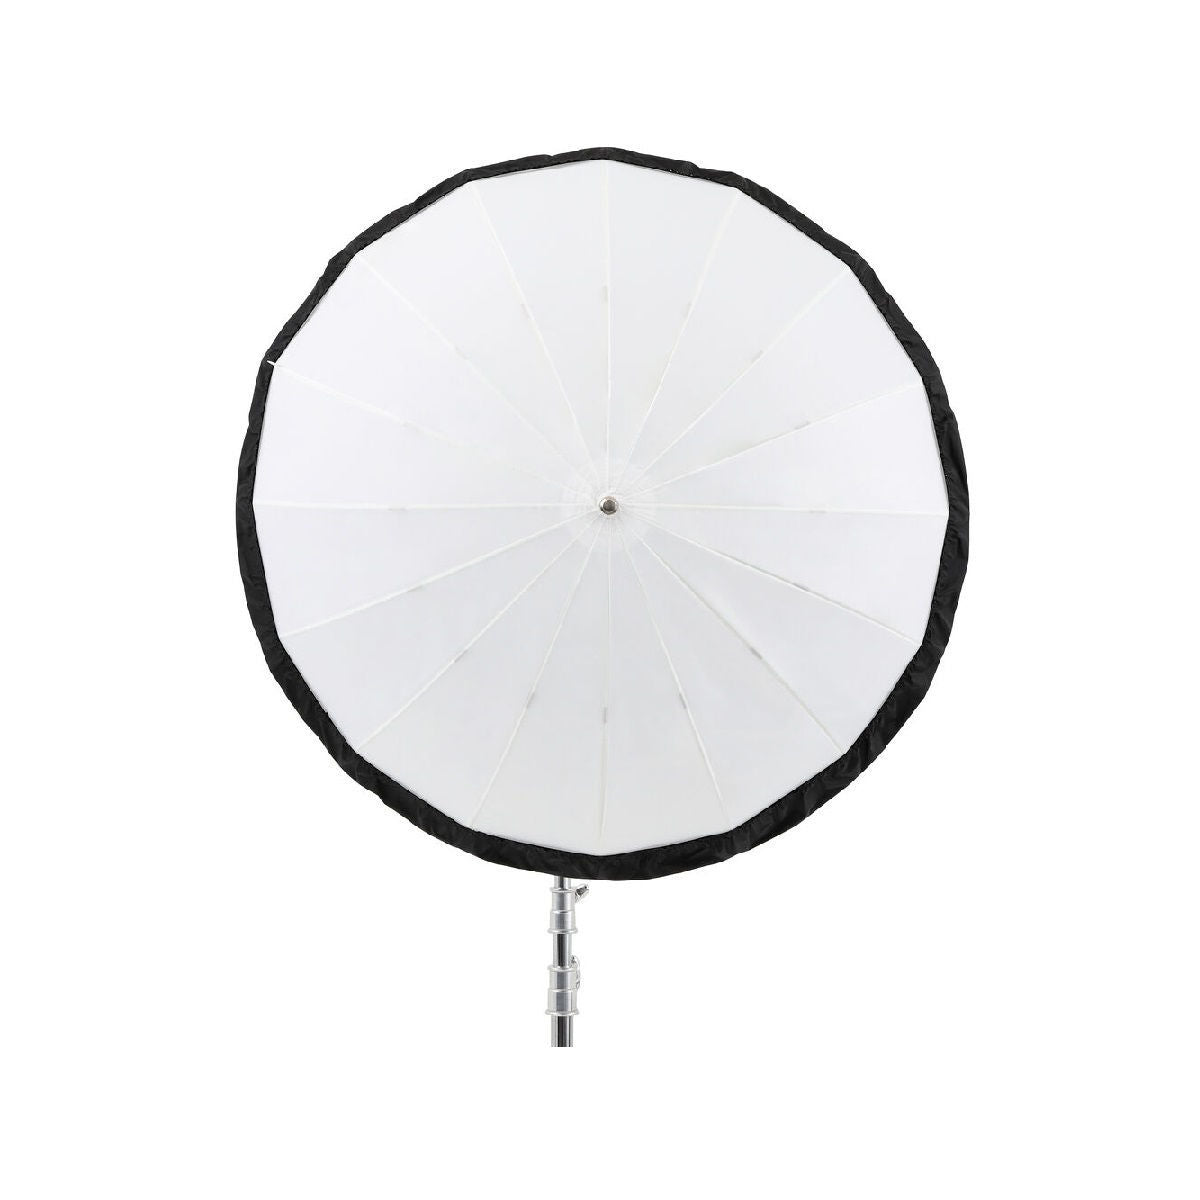 Godox Black and Silver Diffuser For 41.3 InchParabolic Umbrellas.